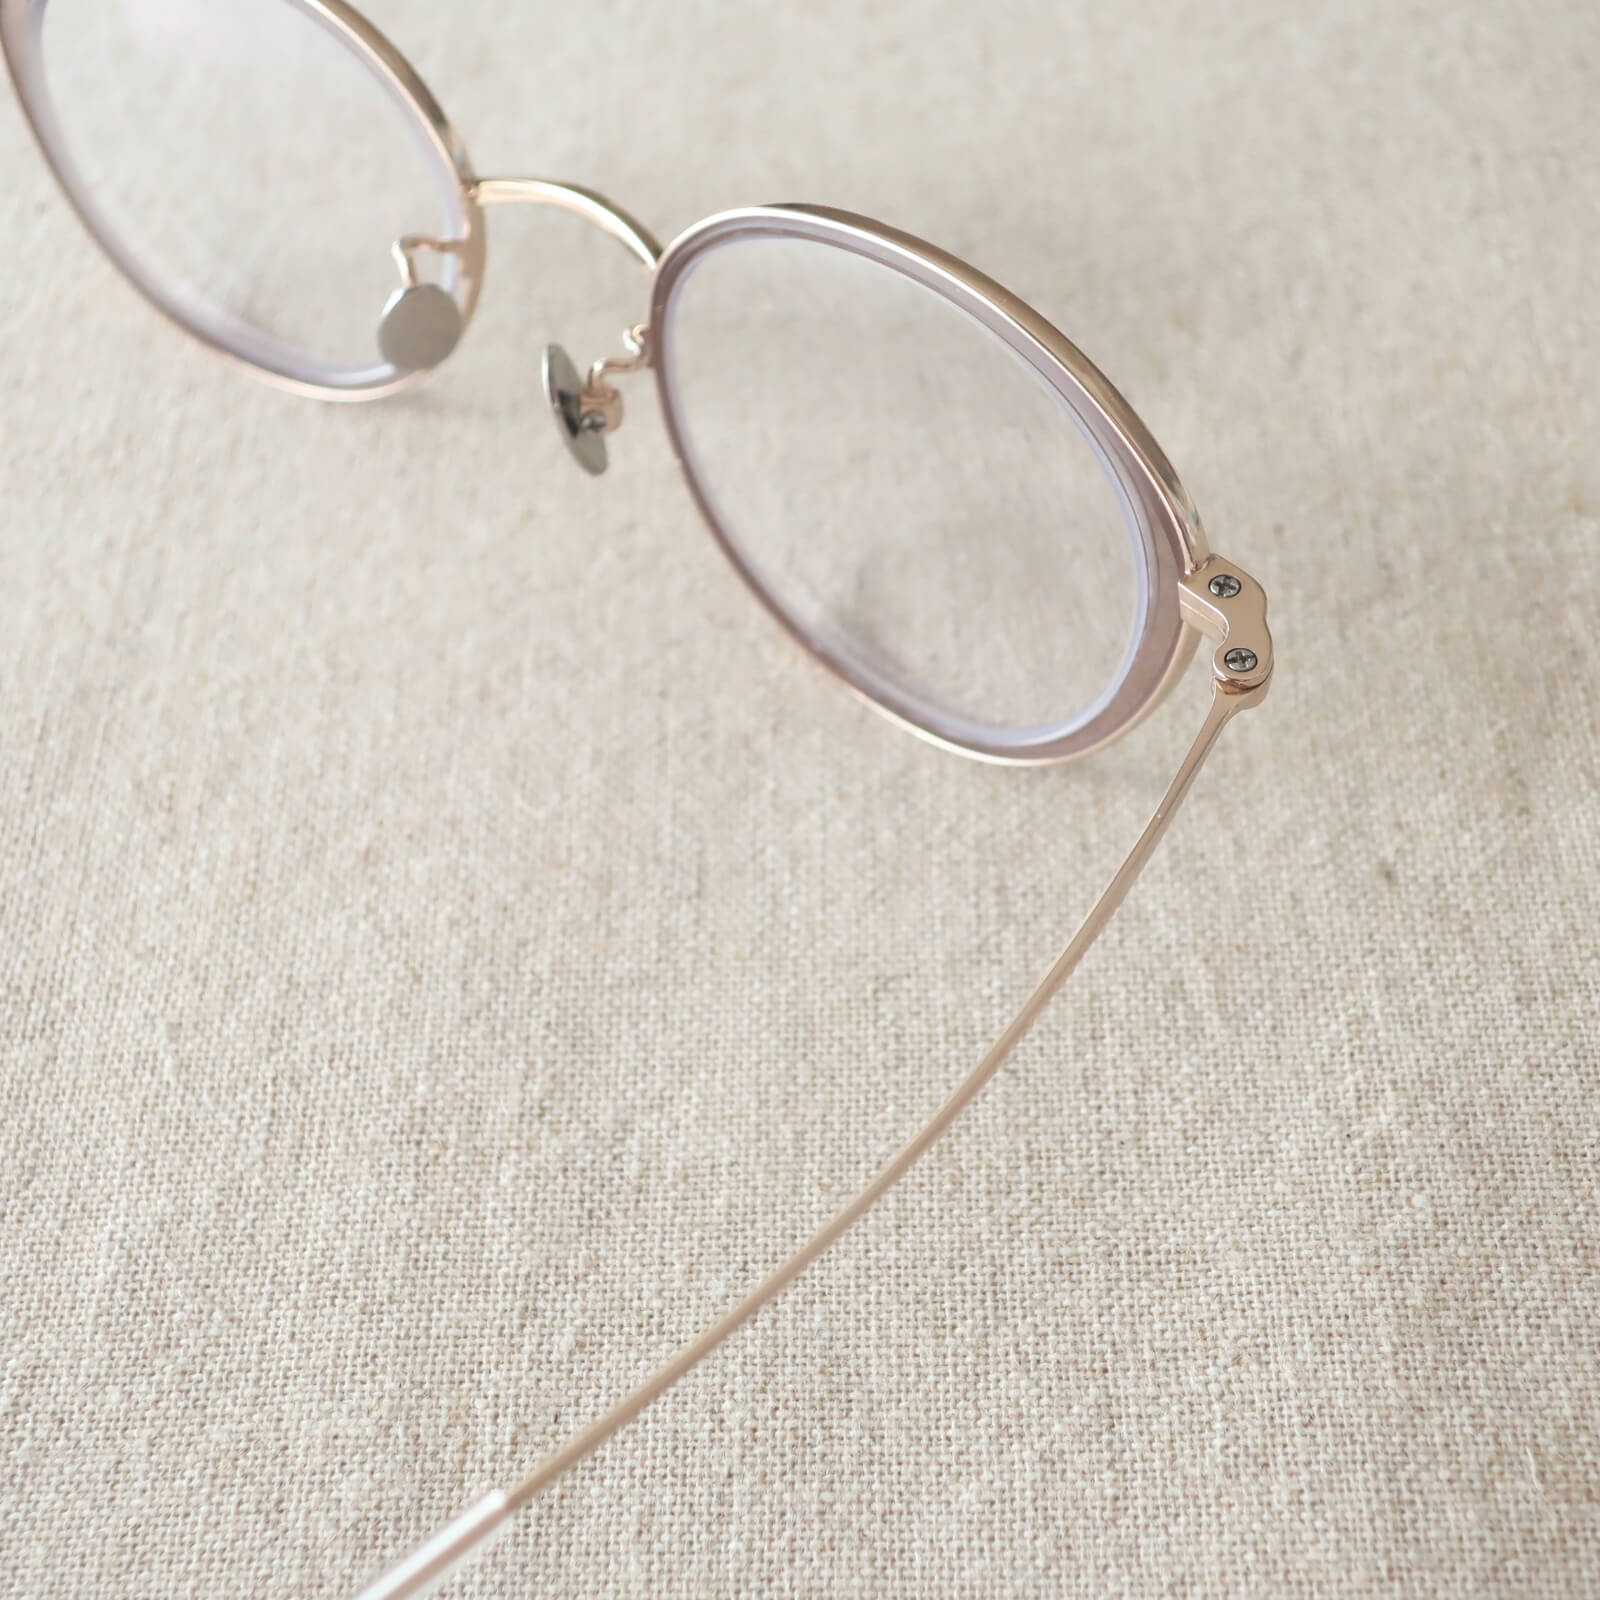 眼鏡市場 スロブ　"めがねのまち"として名高い福井県鯖江市の職人さんの技術で実現したテンプルの細さと軽さ。